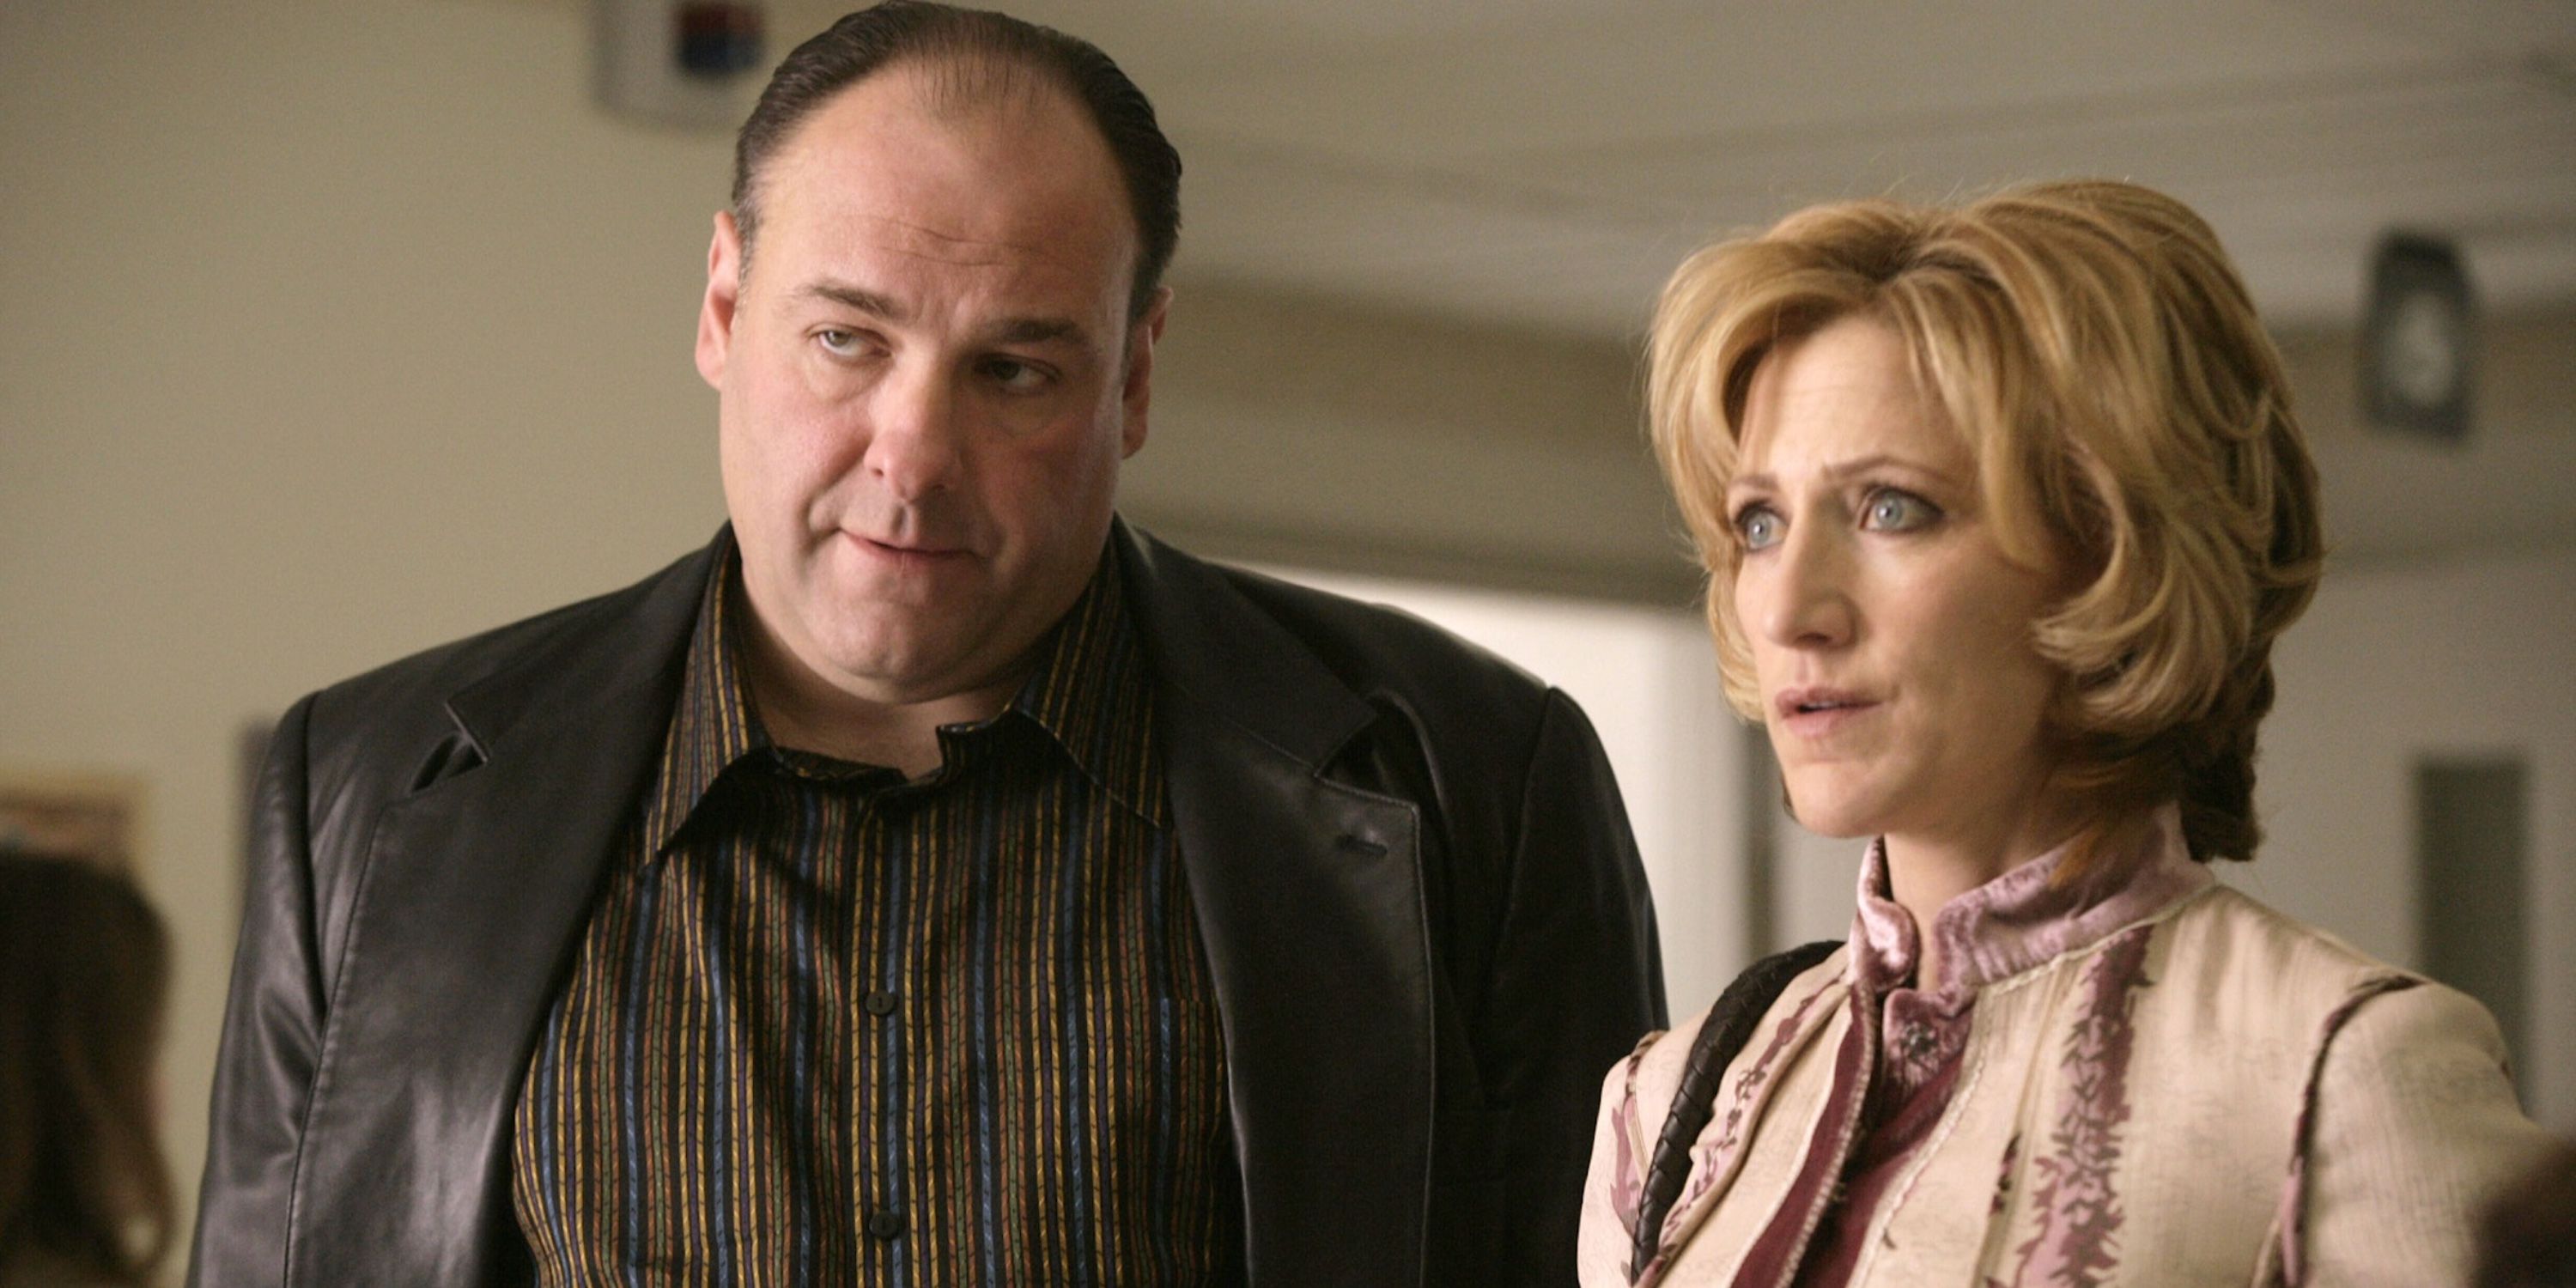 James Gandolfini as Tony Soprano and Carmela as Carmela Soprano in The Sopranos on HBO